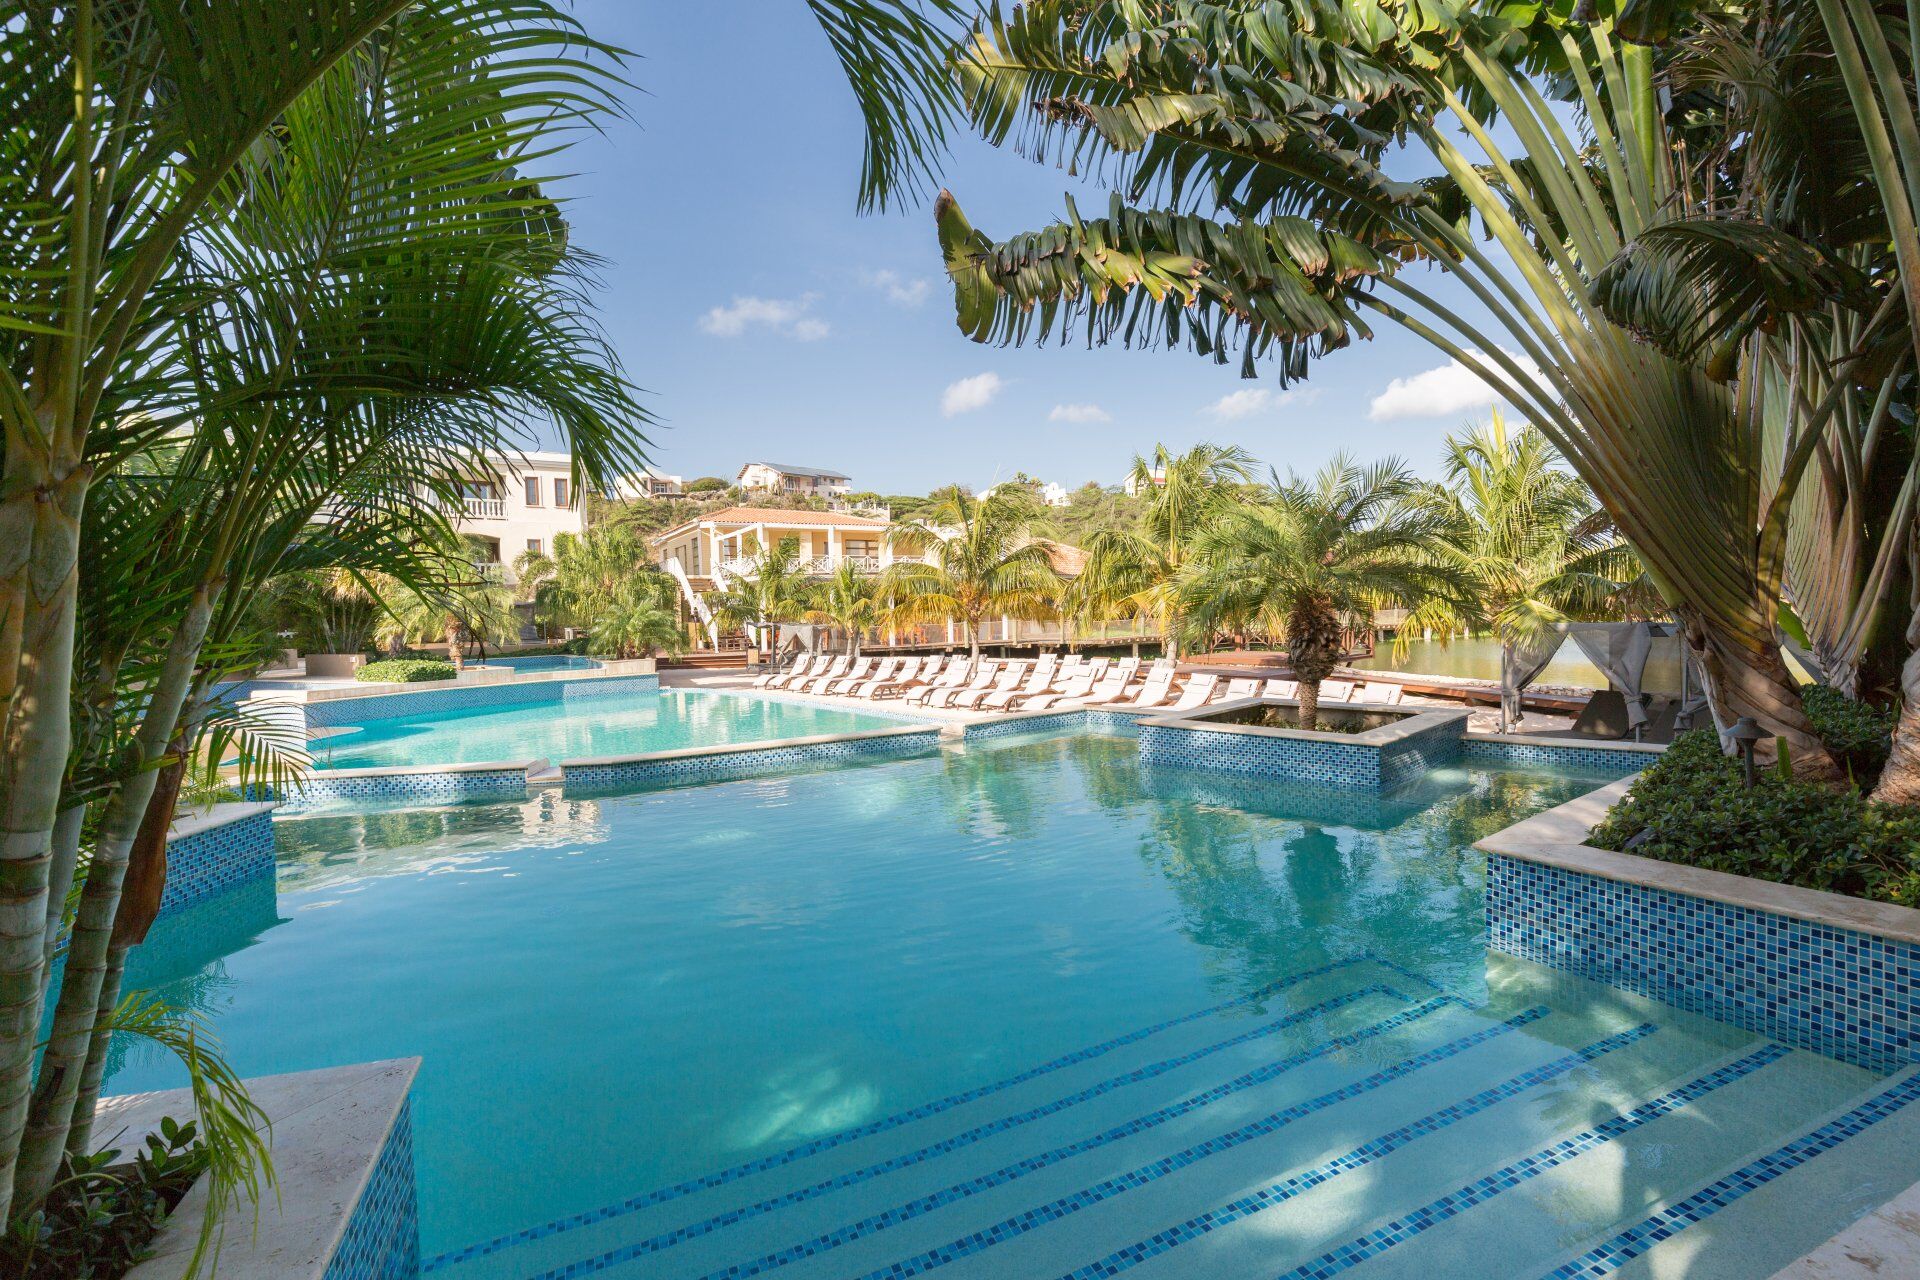 ACOYA Curacao Resort Villas & Spa